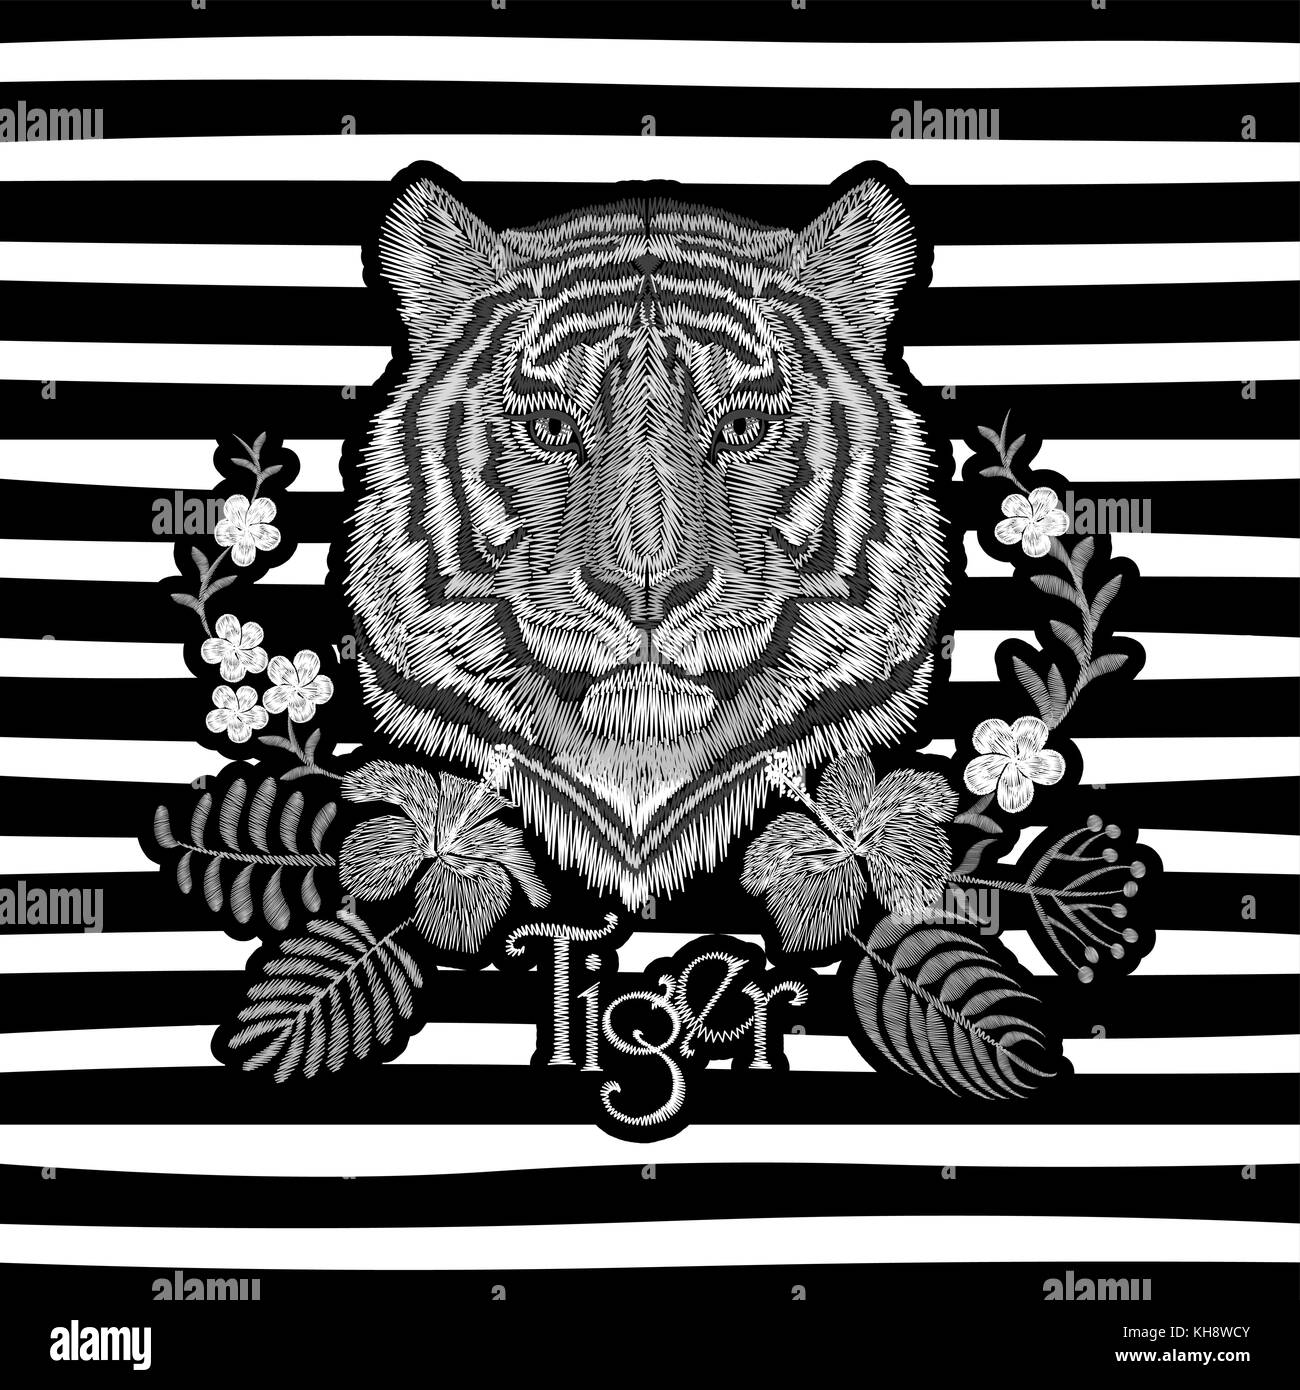 Weiße Stickerei realistische Textur tiger face Patch. mode Blumendruck textile Dekoration Design mit Beschriftung Vektor-illustration gestreiften Hintergrund Stock Vektor